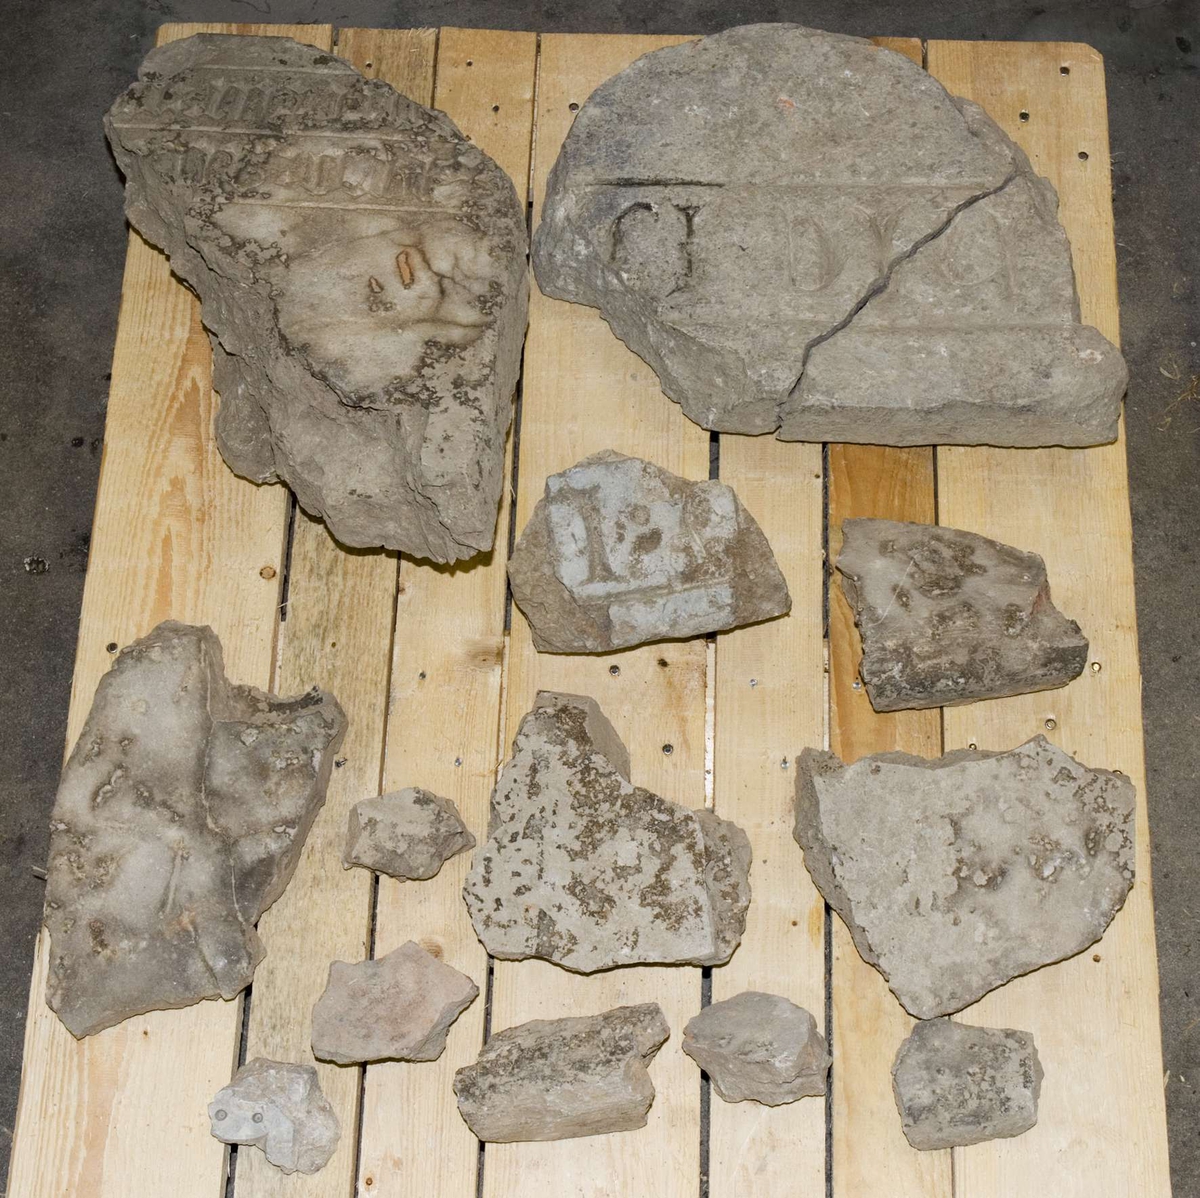 Större fragment av byggnadsdetaljer och gravhällar.